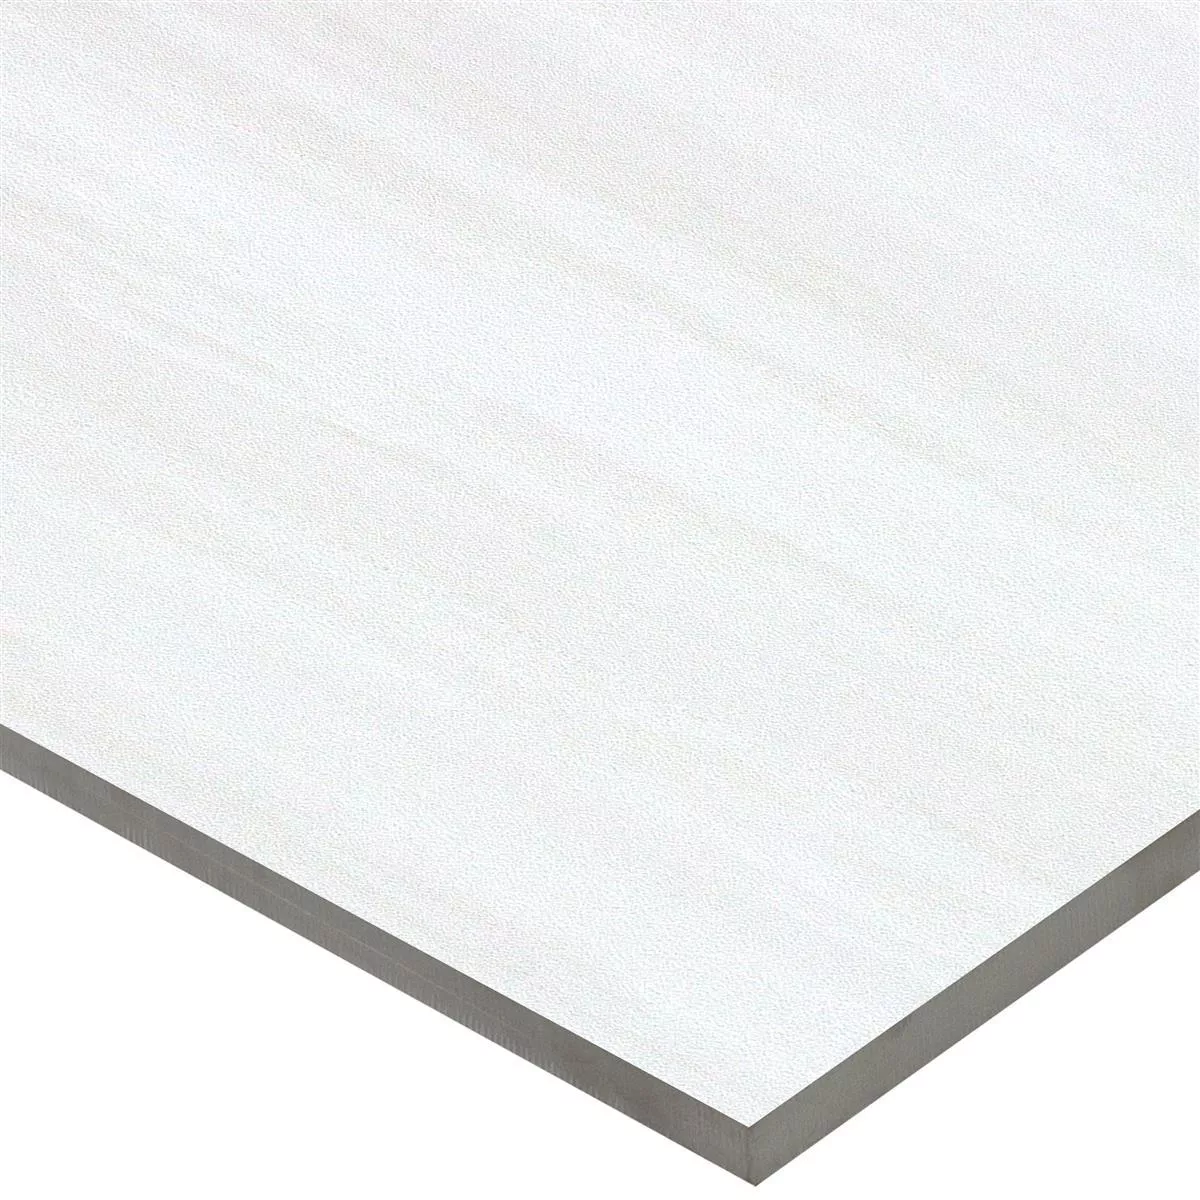 Sample Wall Tiles Aruba Grey Mat Rectified 30x60cm